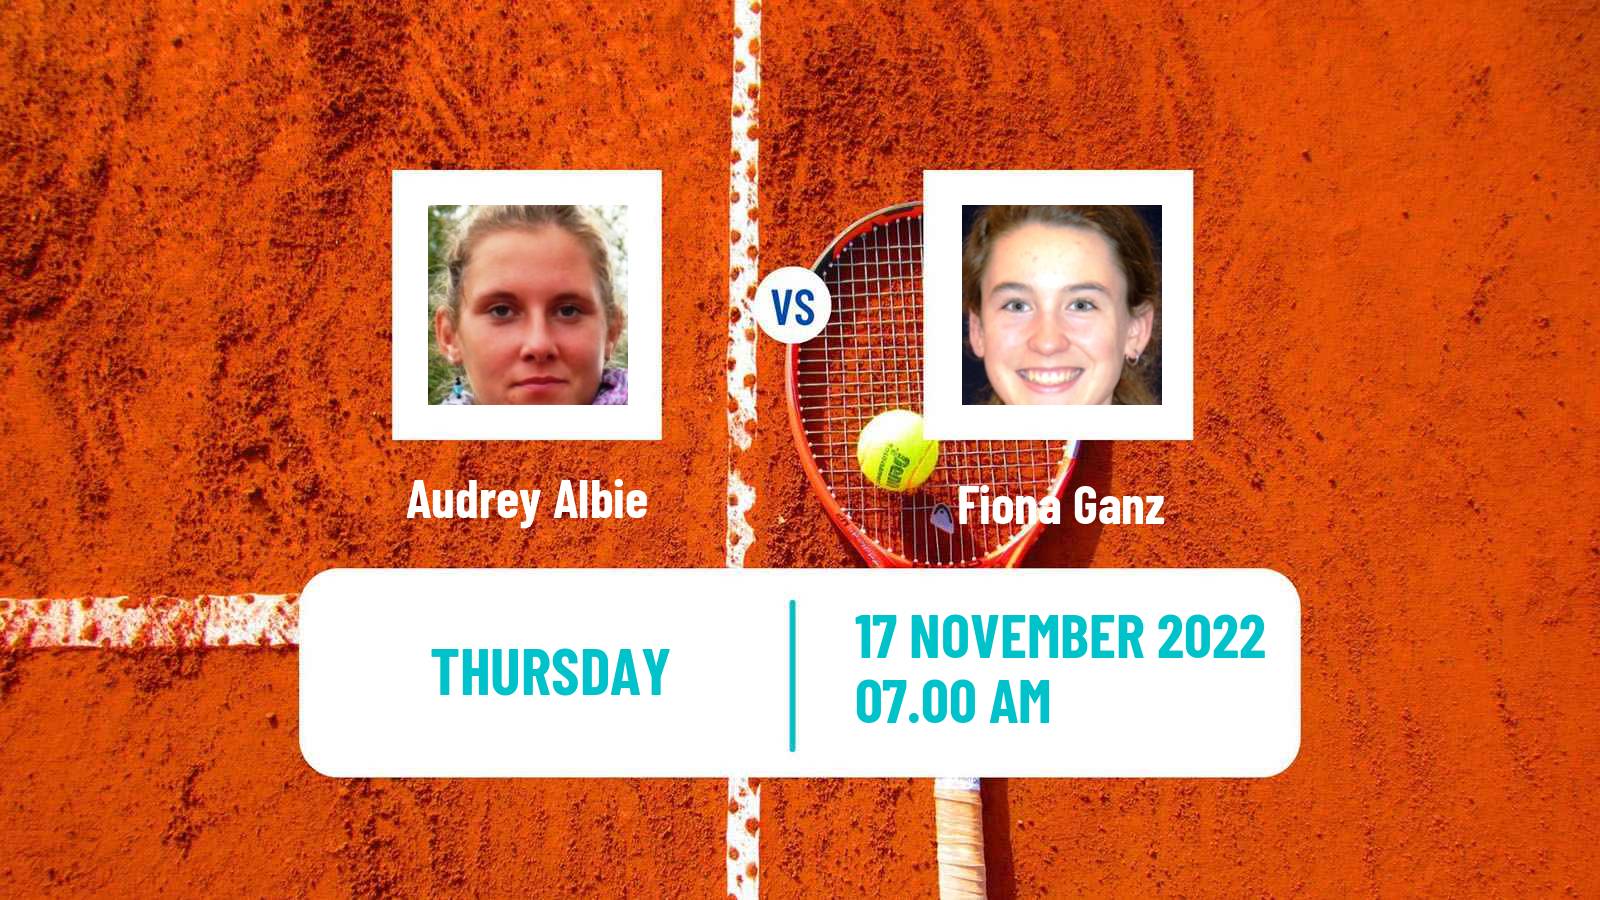 Tennis ITF Tournaments Audrey Albie - Fiona Ganz